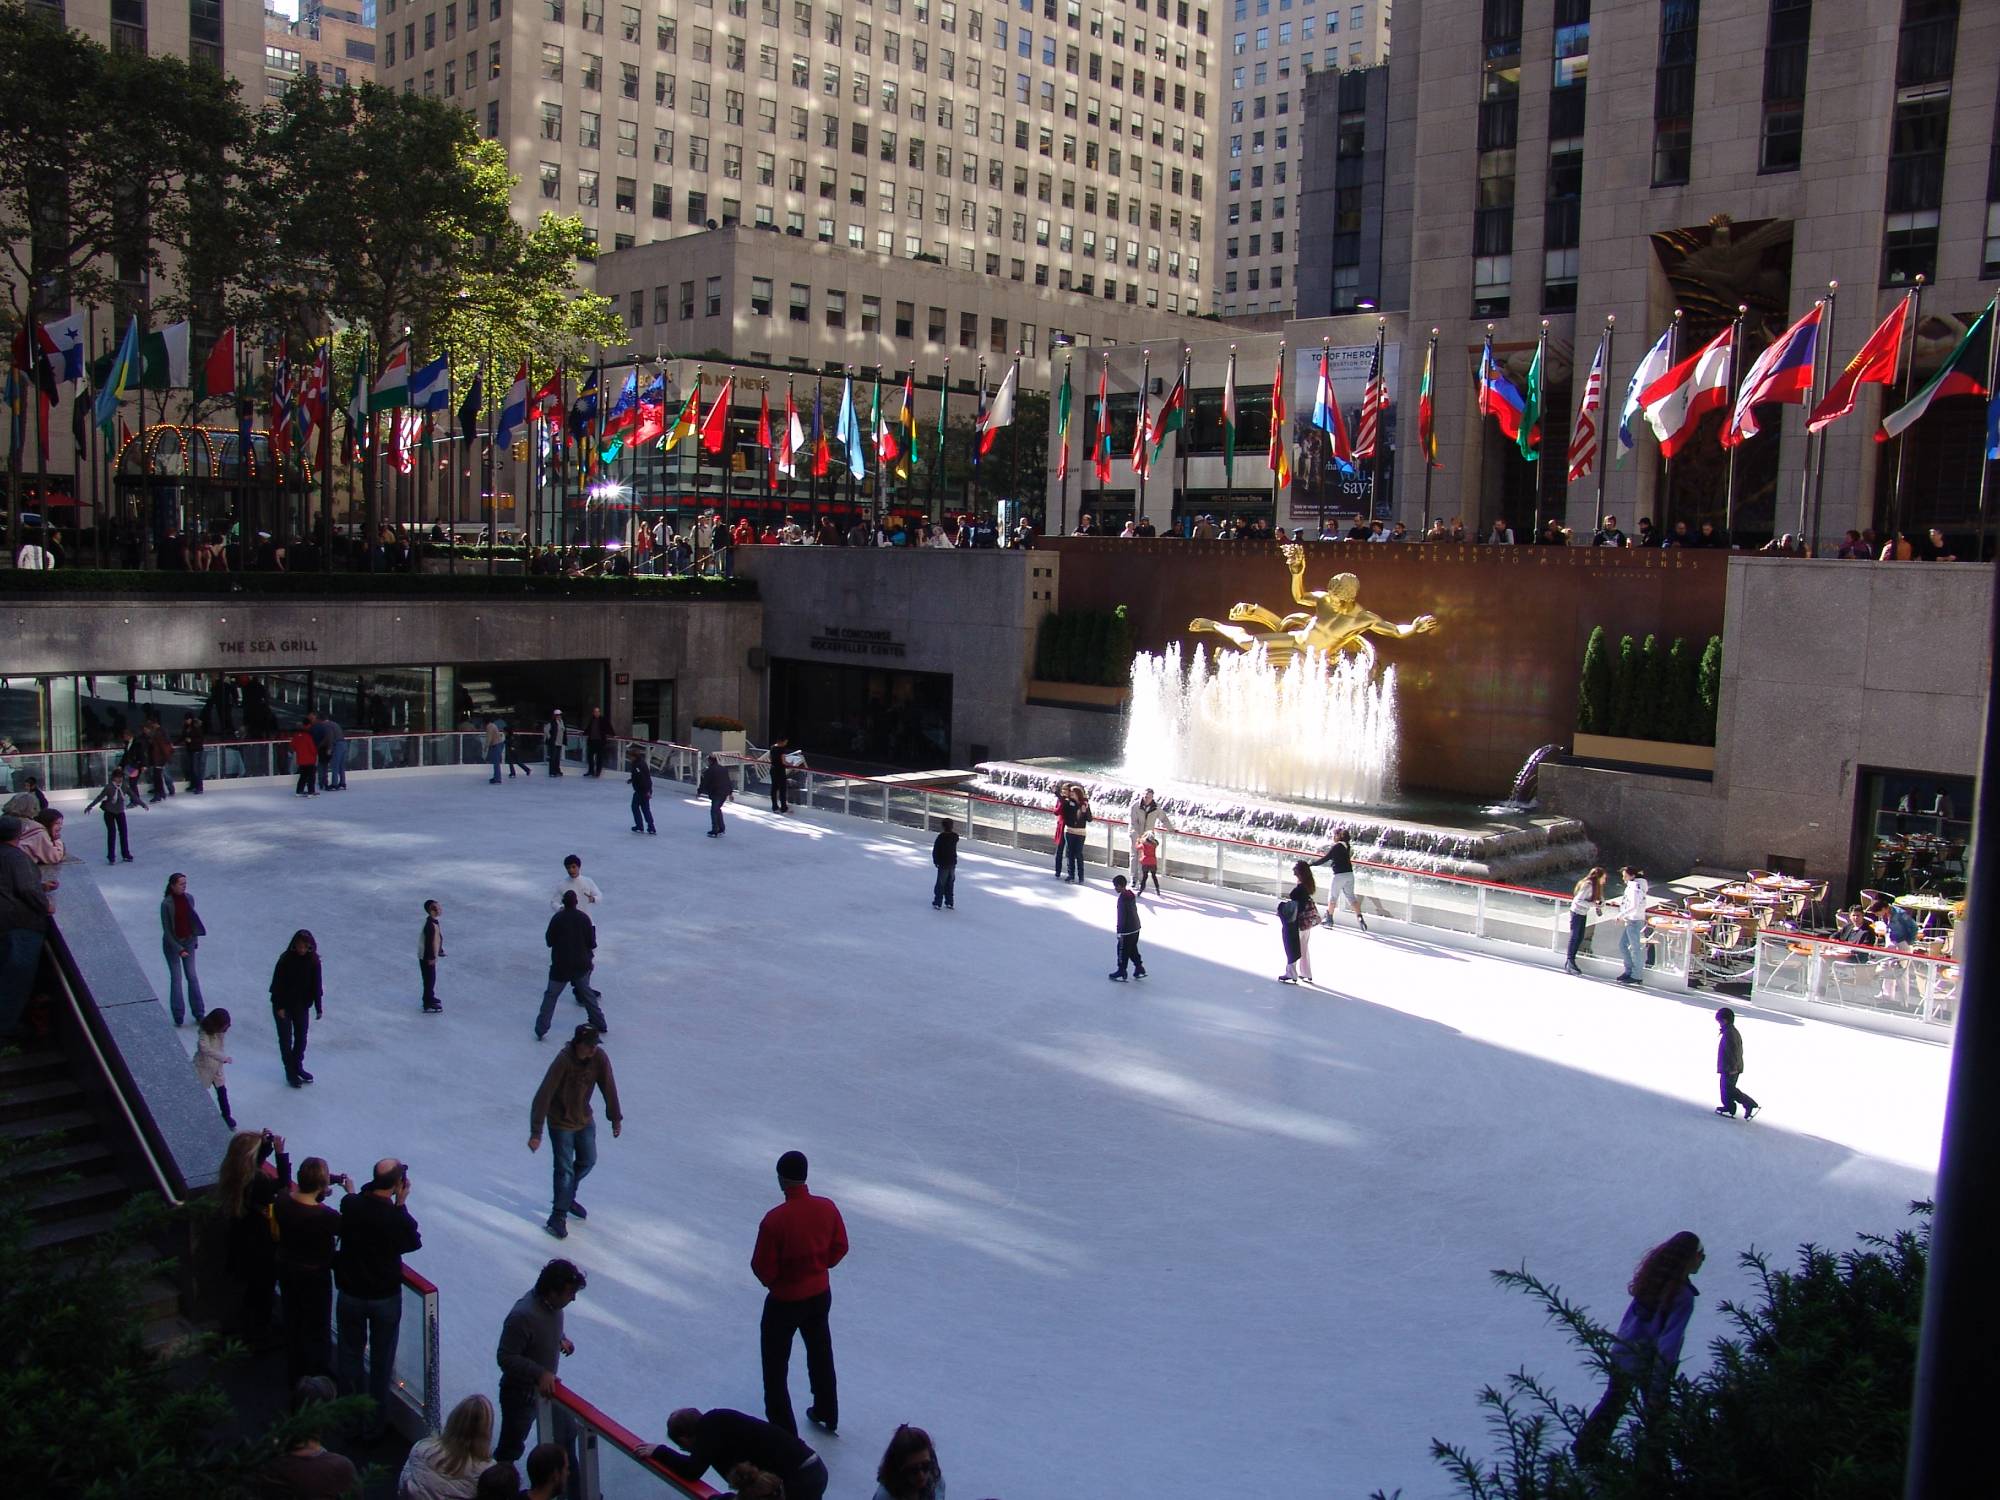 New York - Rockefeller Center skating rink